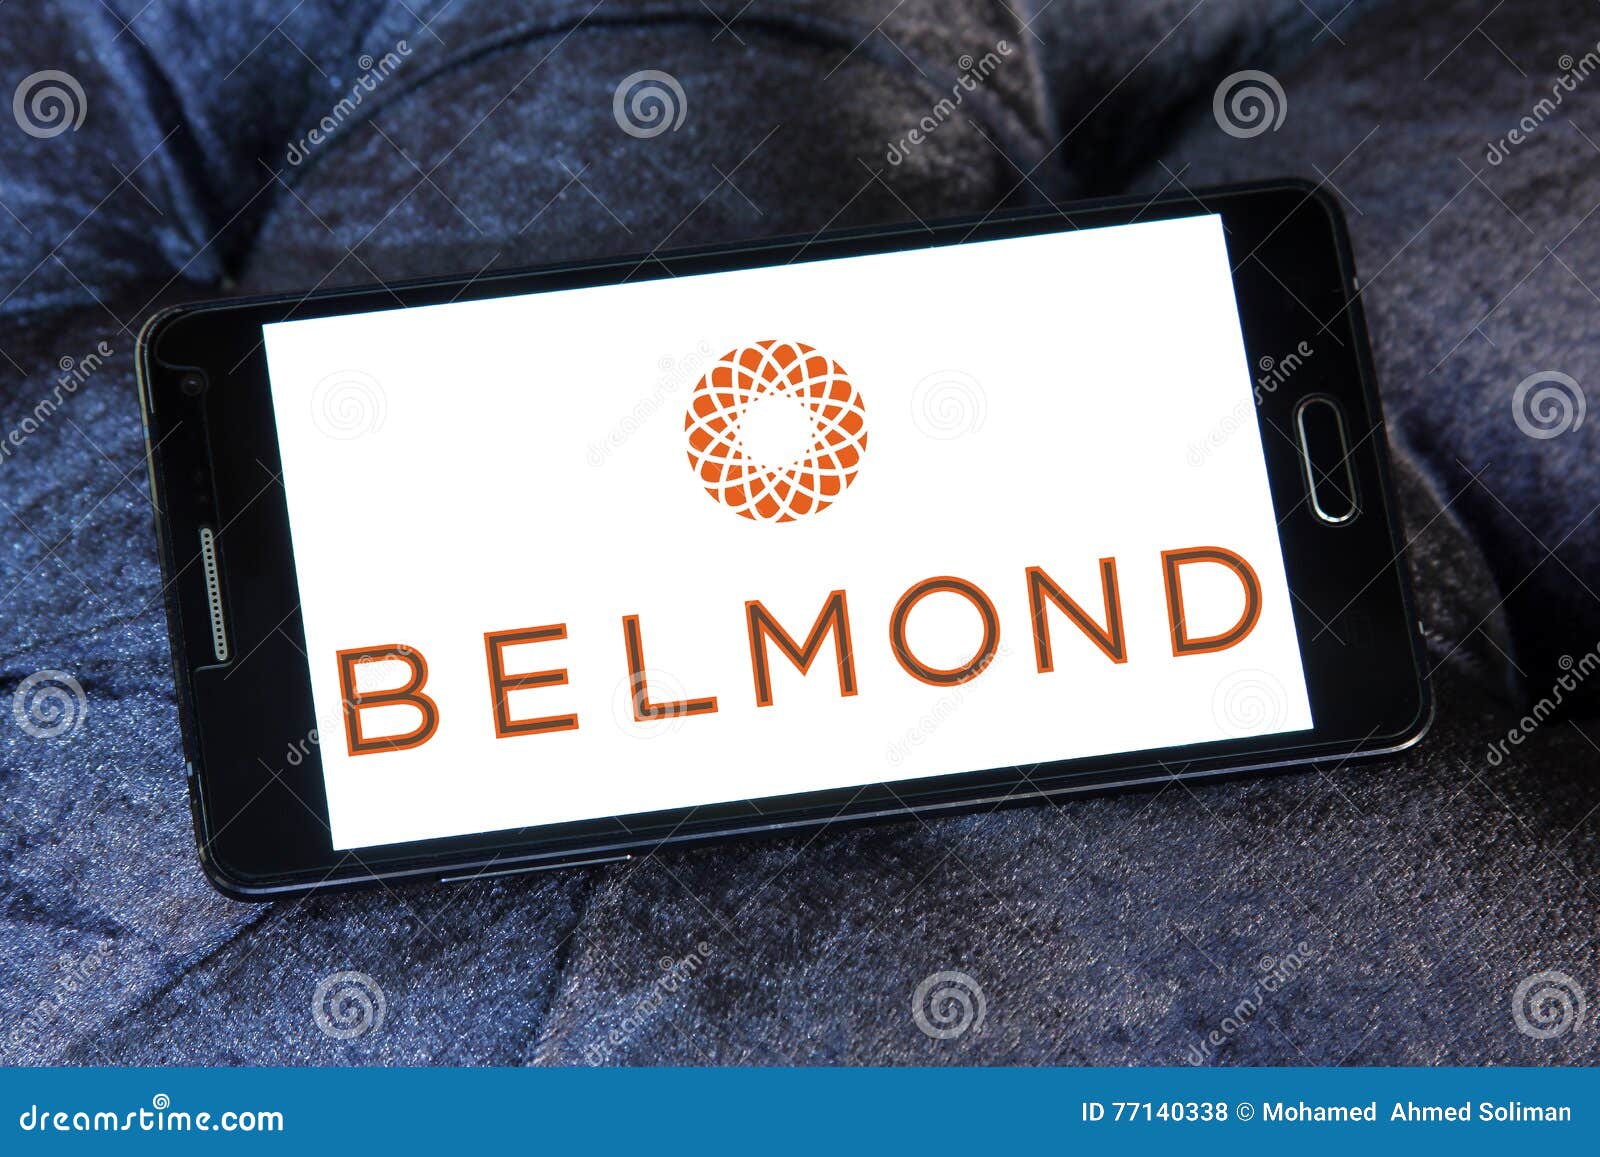 belmond hotels logo